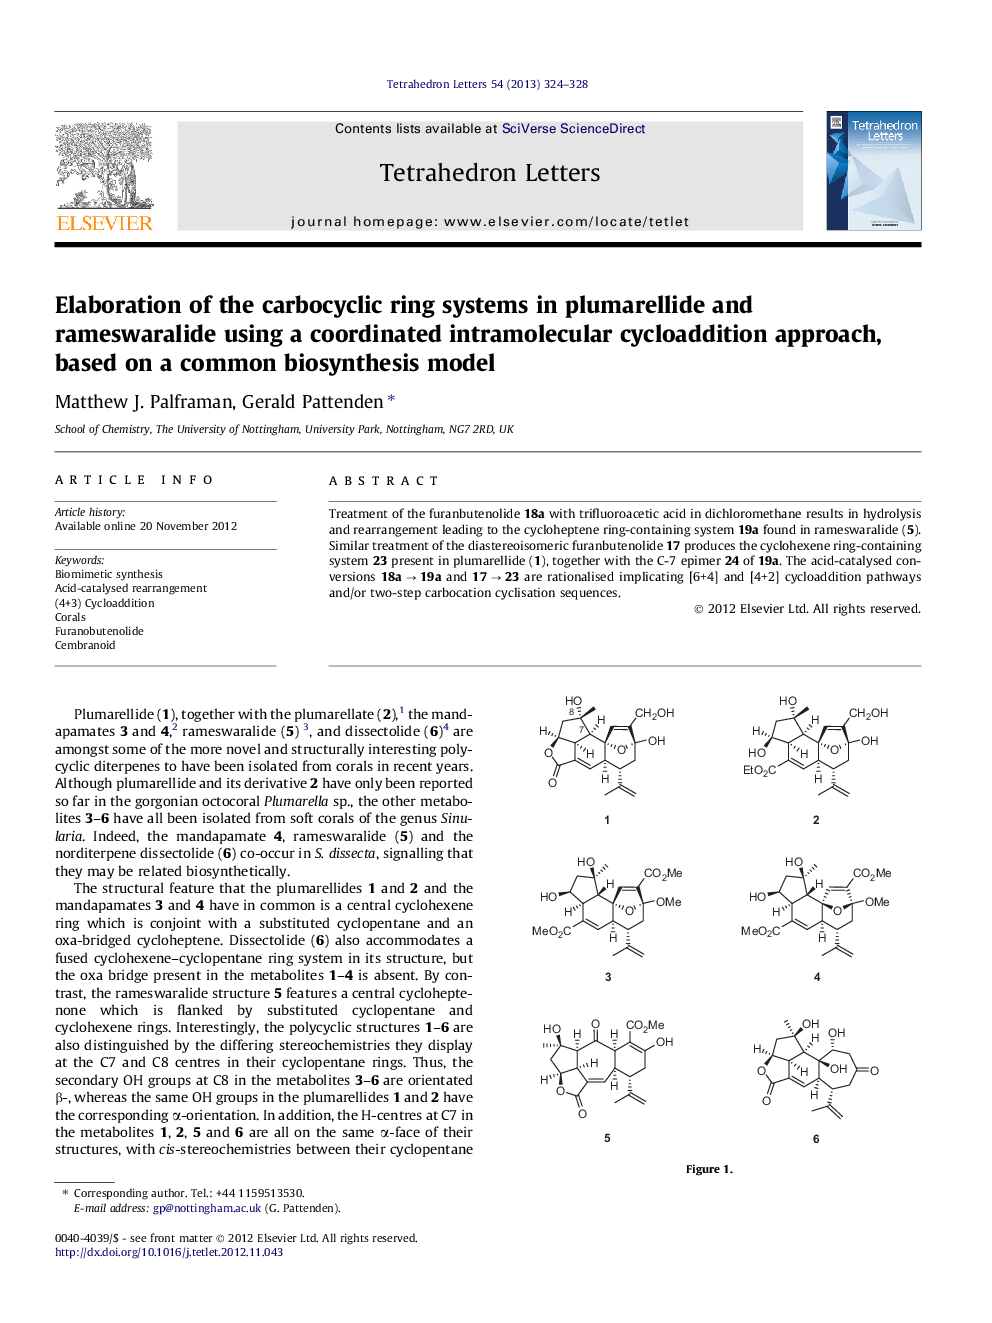 طراحی سیستم حلقه های کاربوسیکلیک در پلومرئیلد و رامسورالید با استفاده از یک رویکرد سیکل جاذب درون مولکولی هماهنگ شده بر اساس یک مدل بیوسنتز معمول 